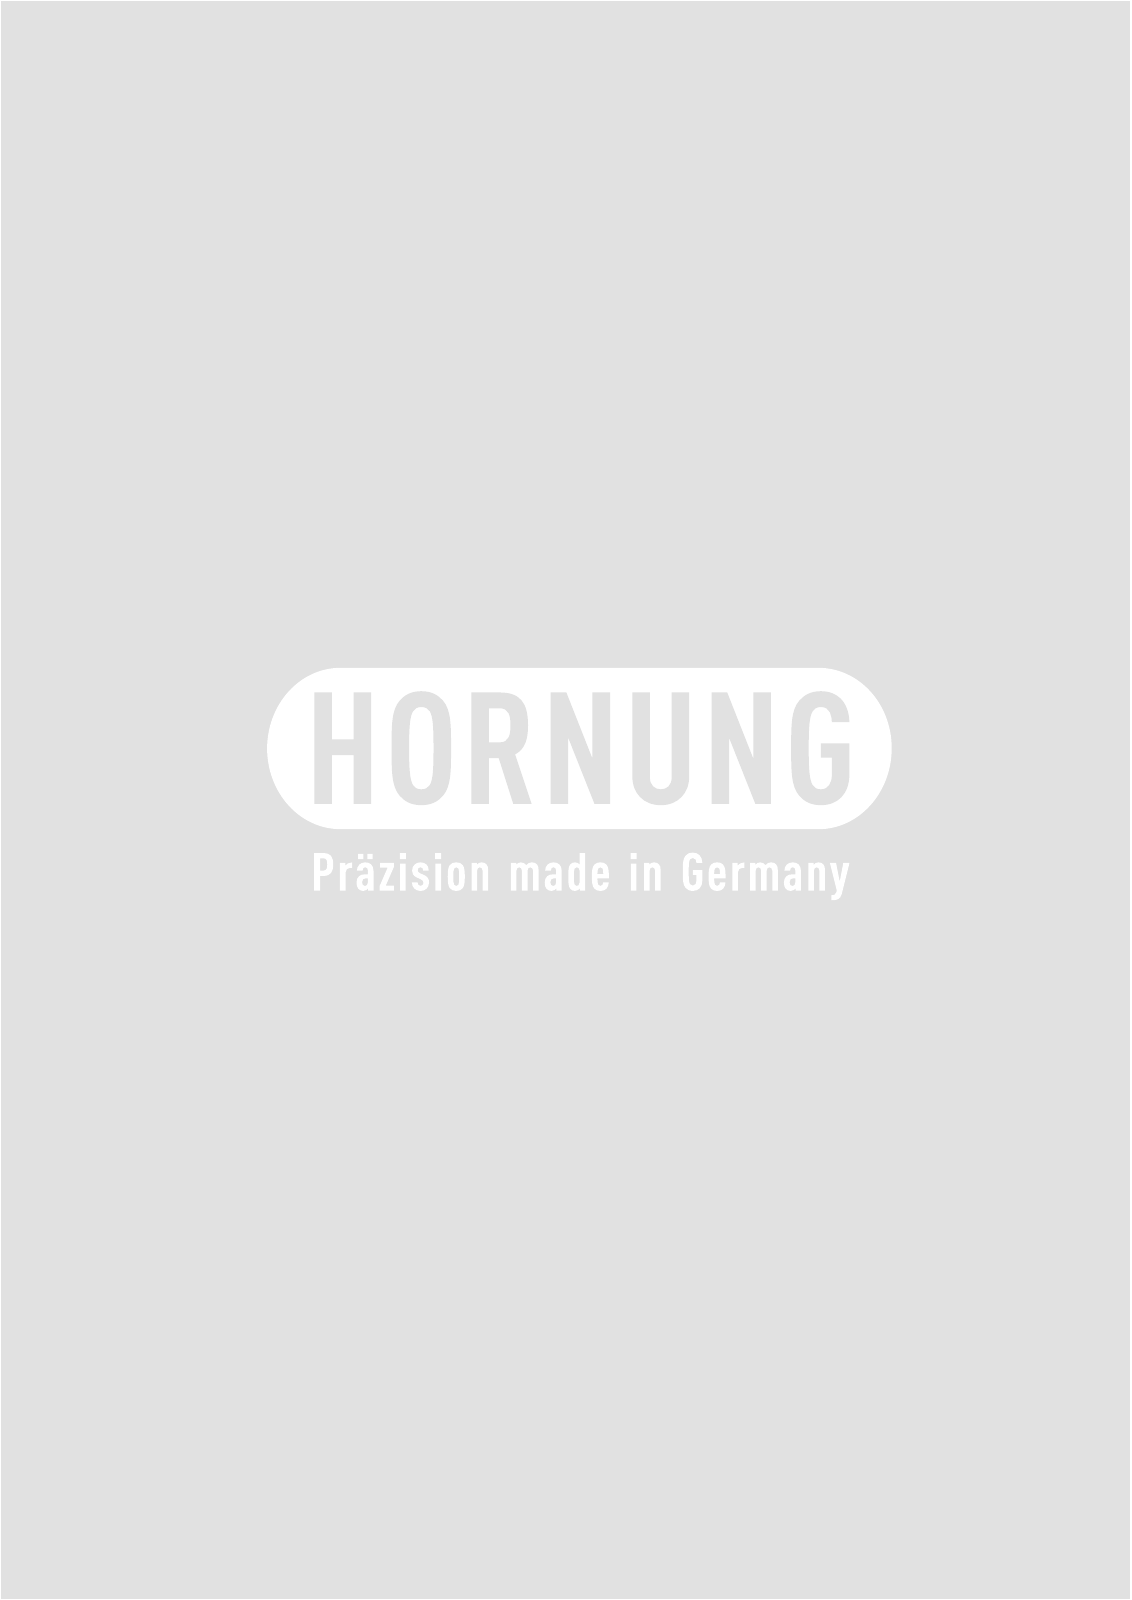 Vorschau Katalog Armaturen für Reinstgase - Hornung GmbH Seite 78